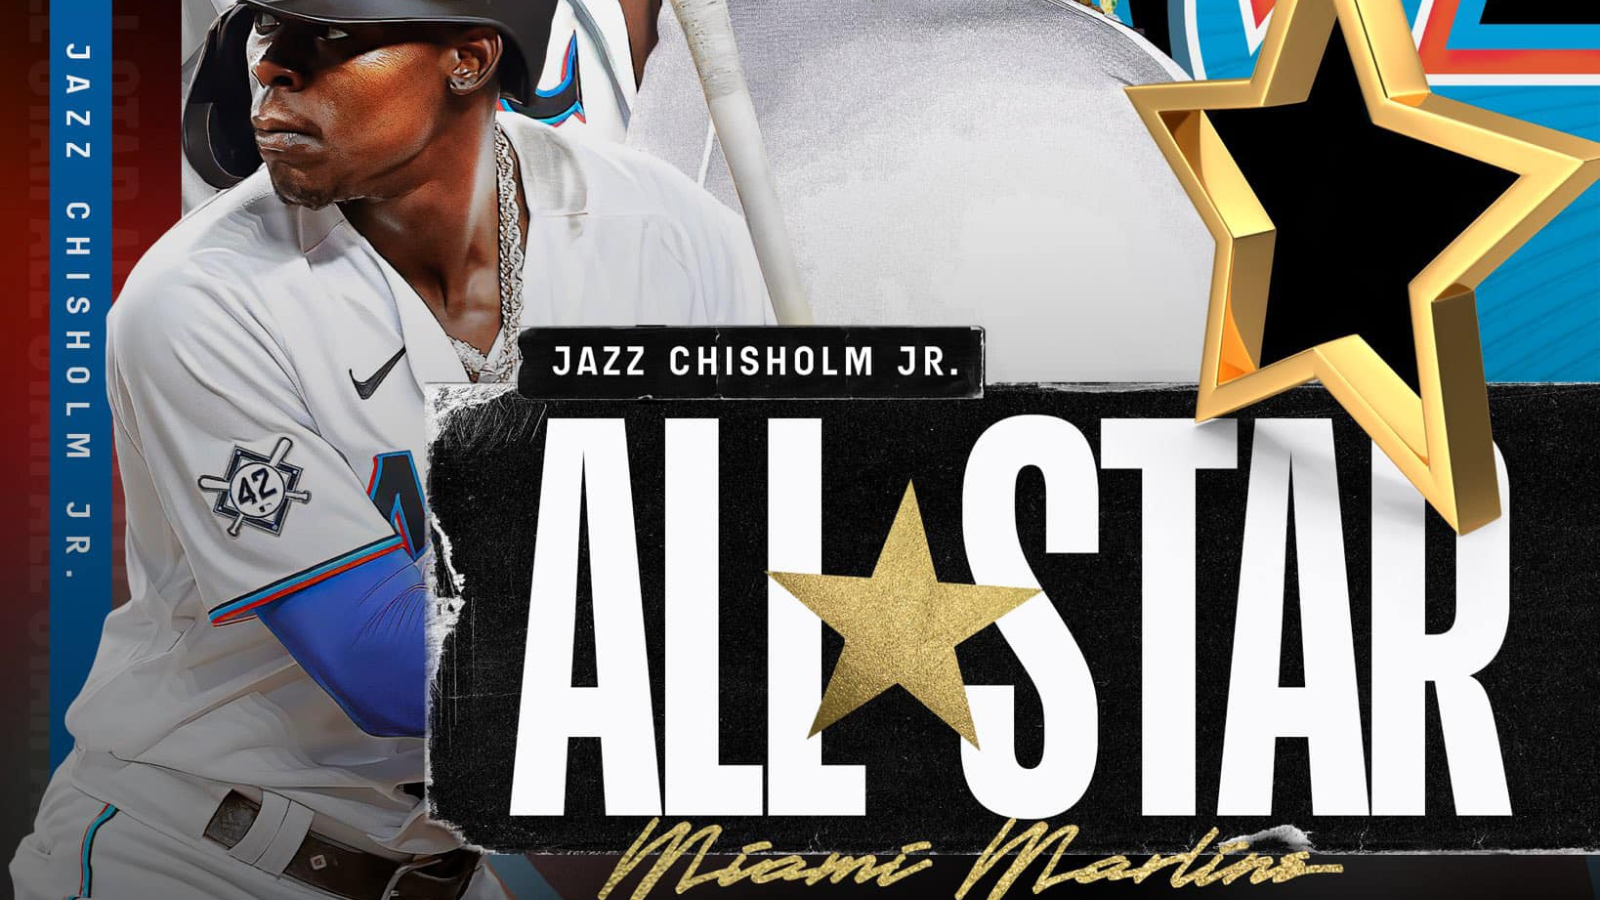 Jazz Chisholm Jr emerging as Marlins fan favorite impactful star HD  wallpaper  Pxfuel